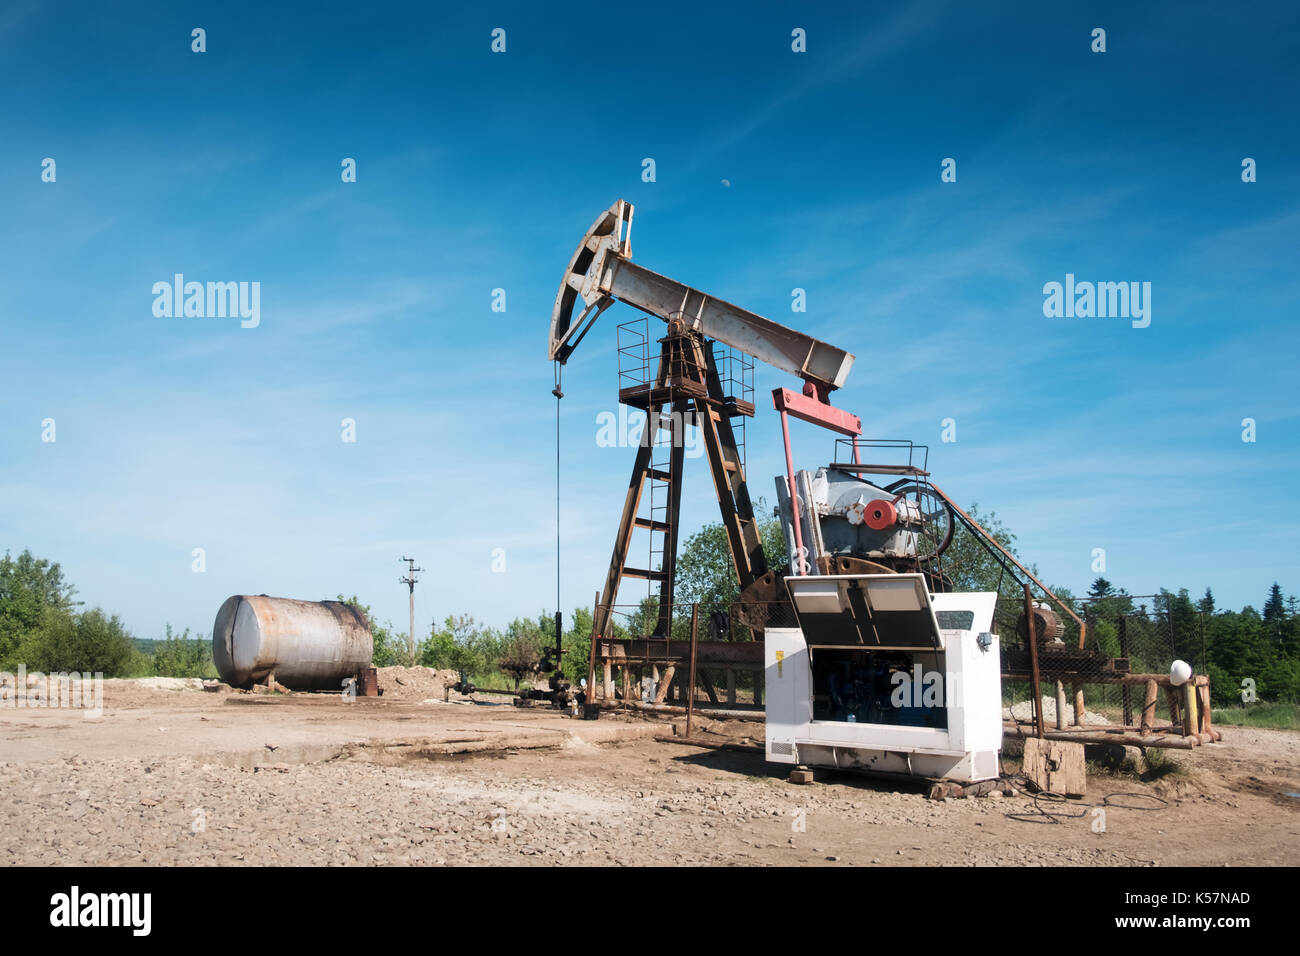 Die Ölpumpe vor blauem Himmel Hintergrund Stockfoto